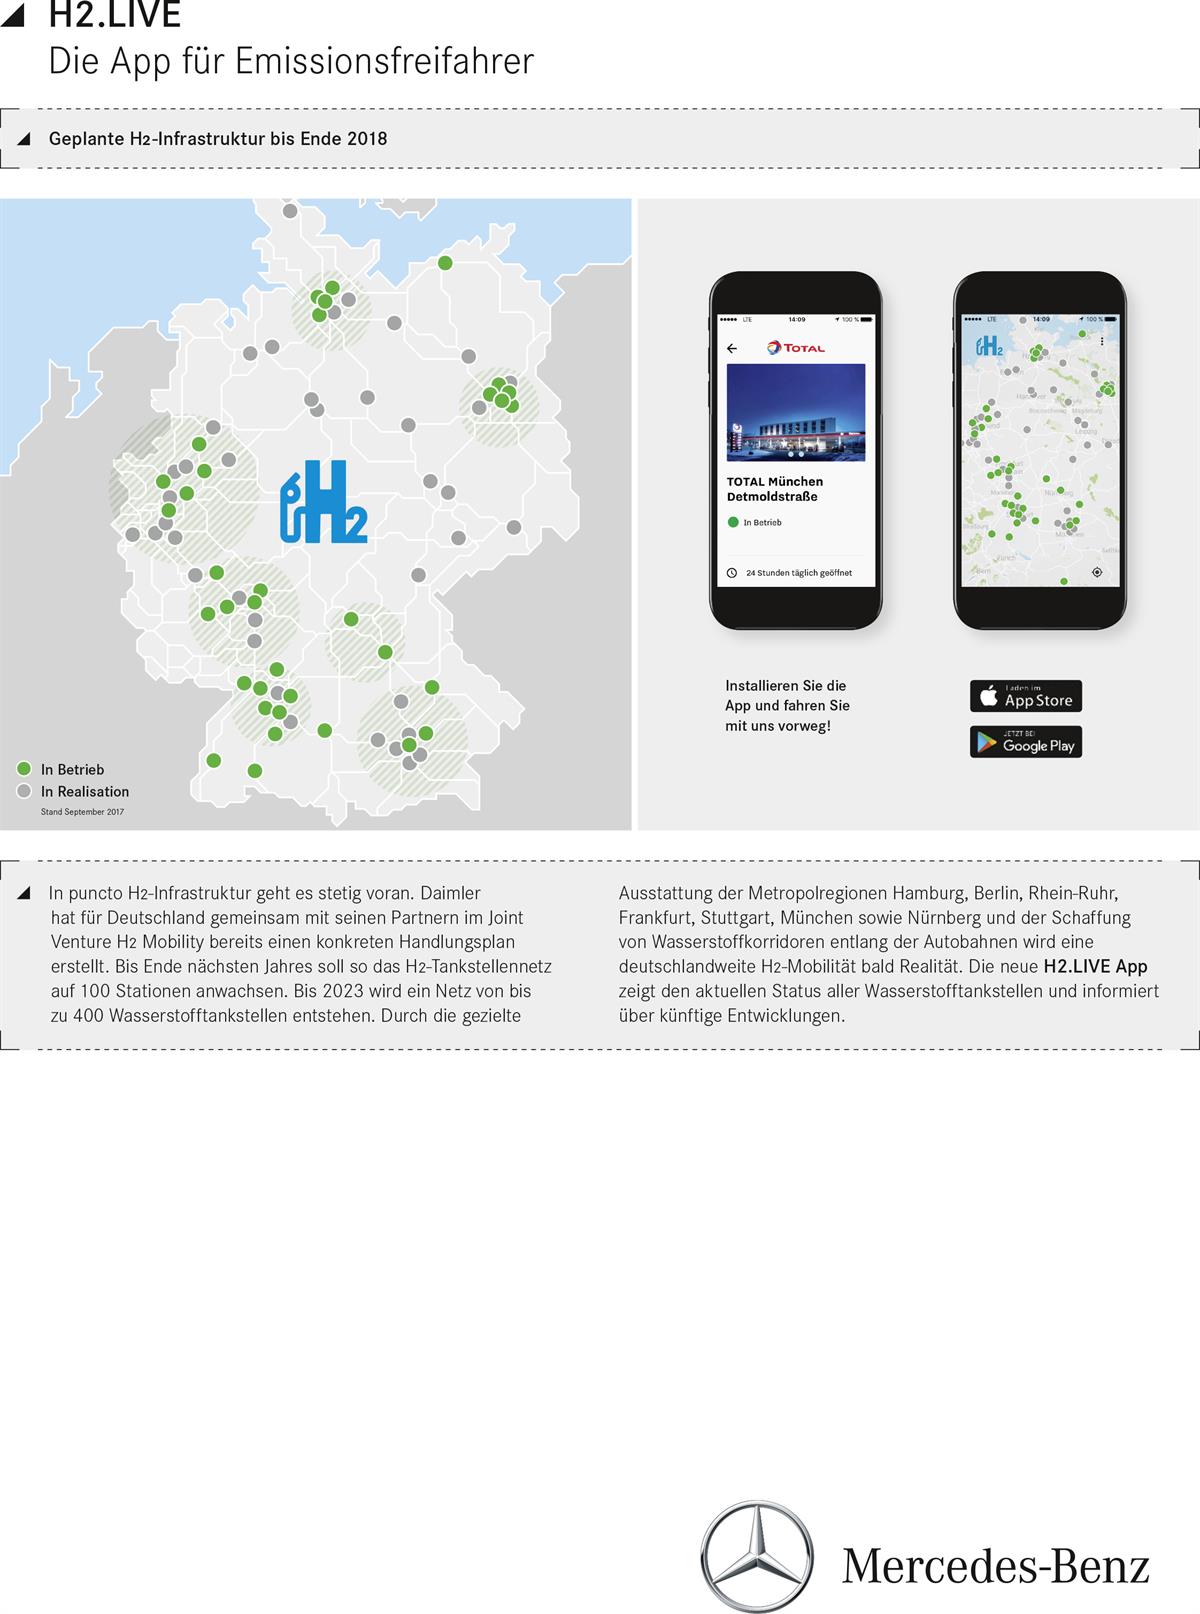 H2.LIVE - Die App für Emissionsfreifahrer